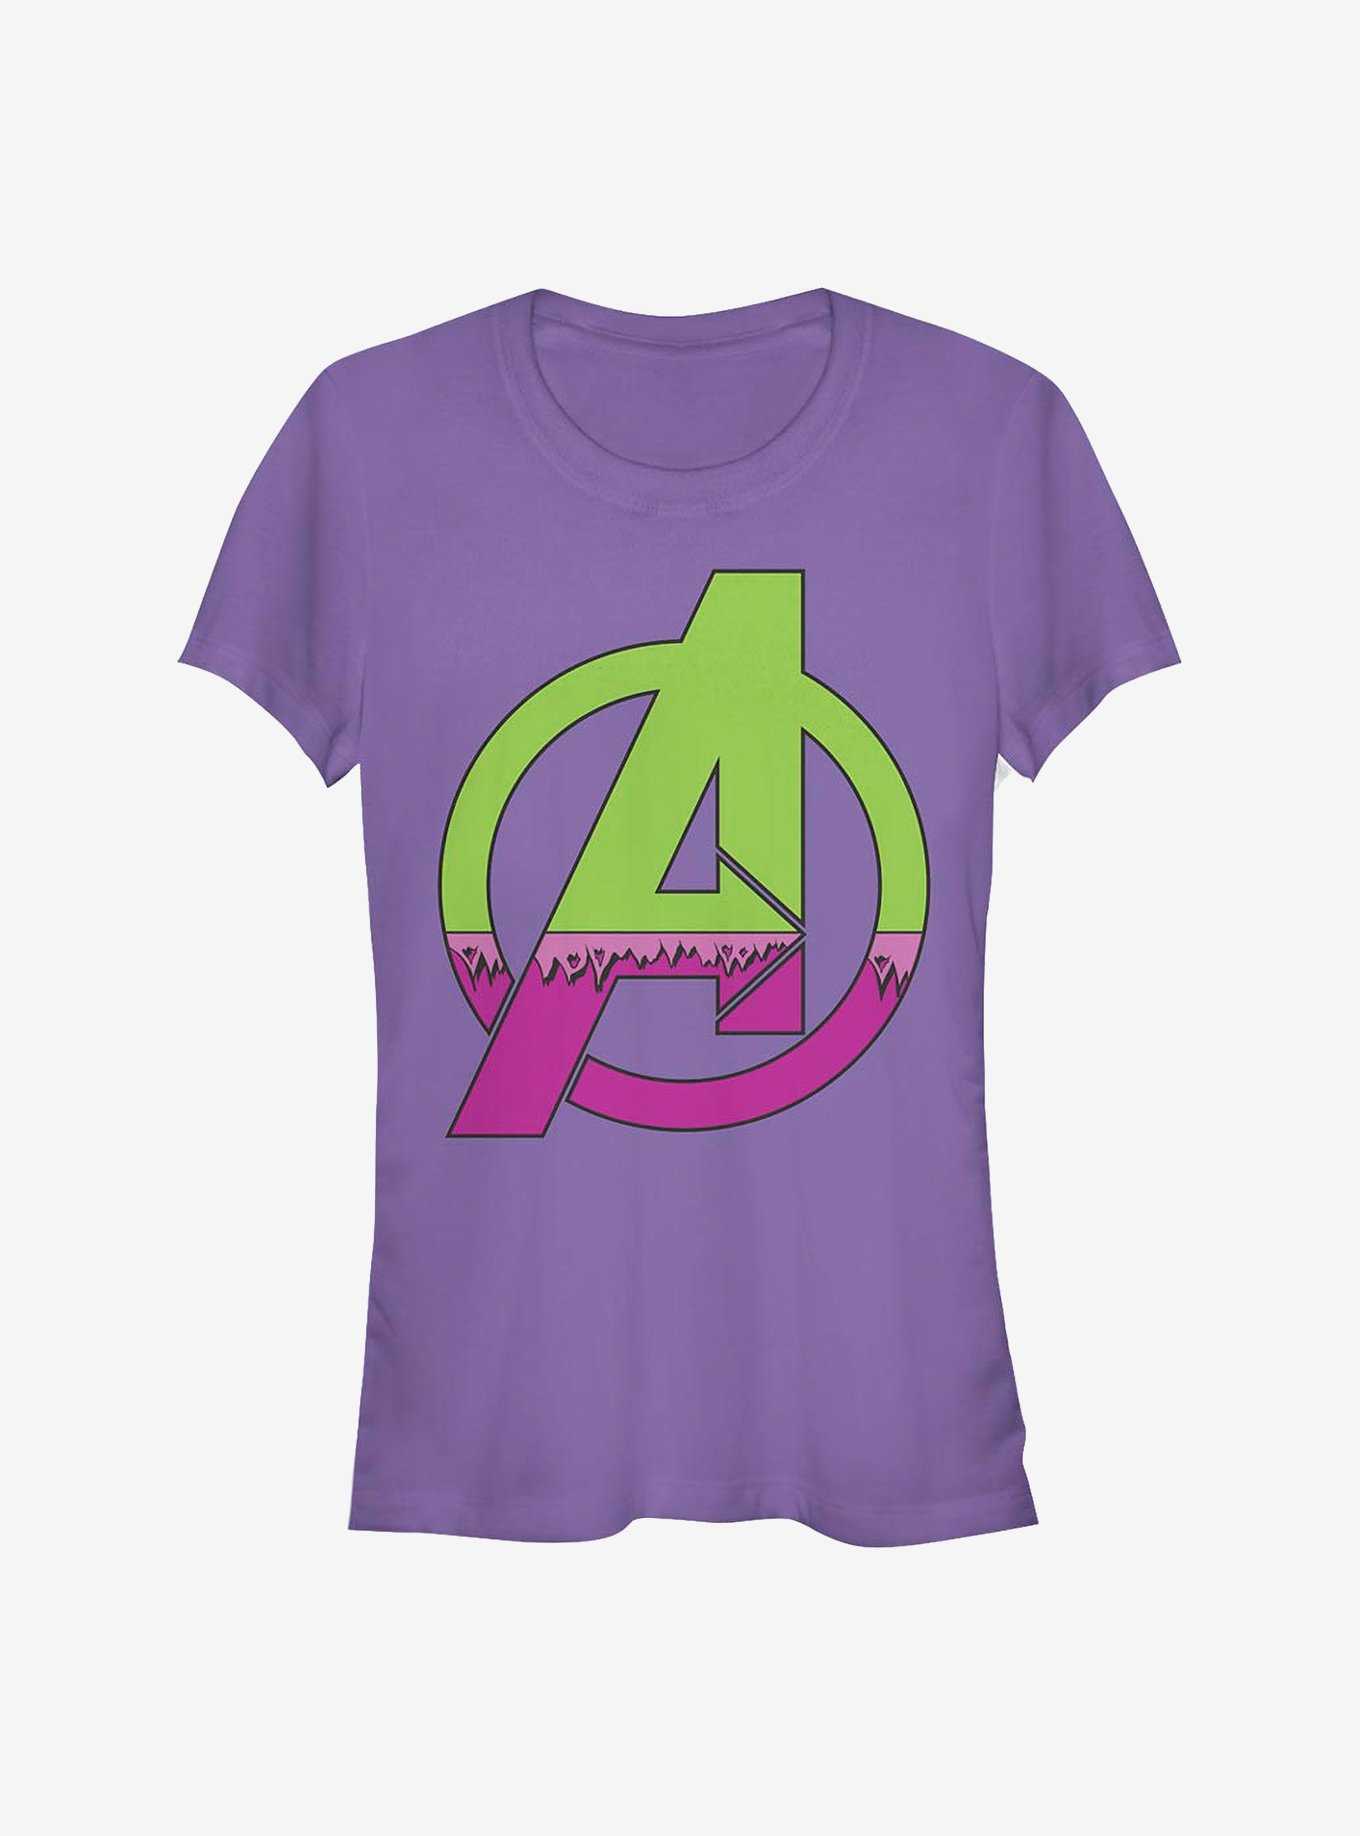 Marvel Avengers Avenger Hulk Costume Girls T-Shirt, , hi-res